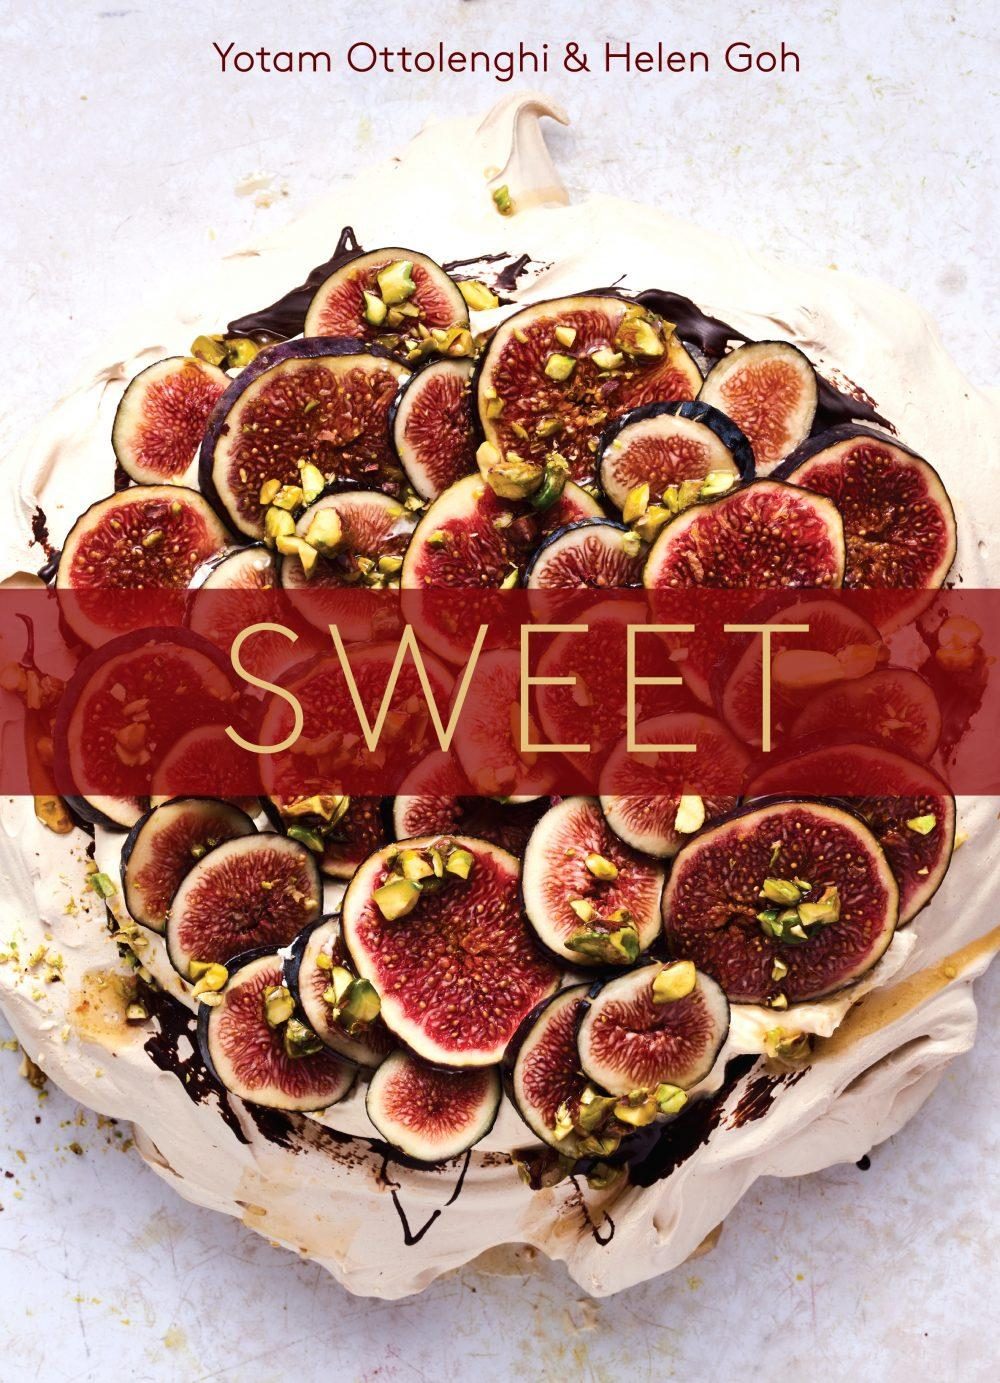 Sweet: Desserts from London's Ottlolenghi